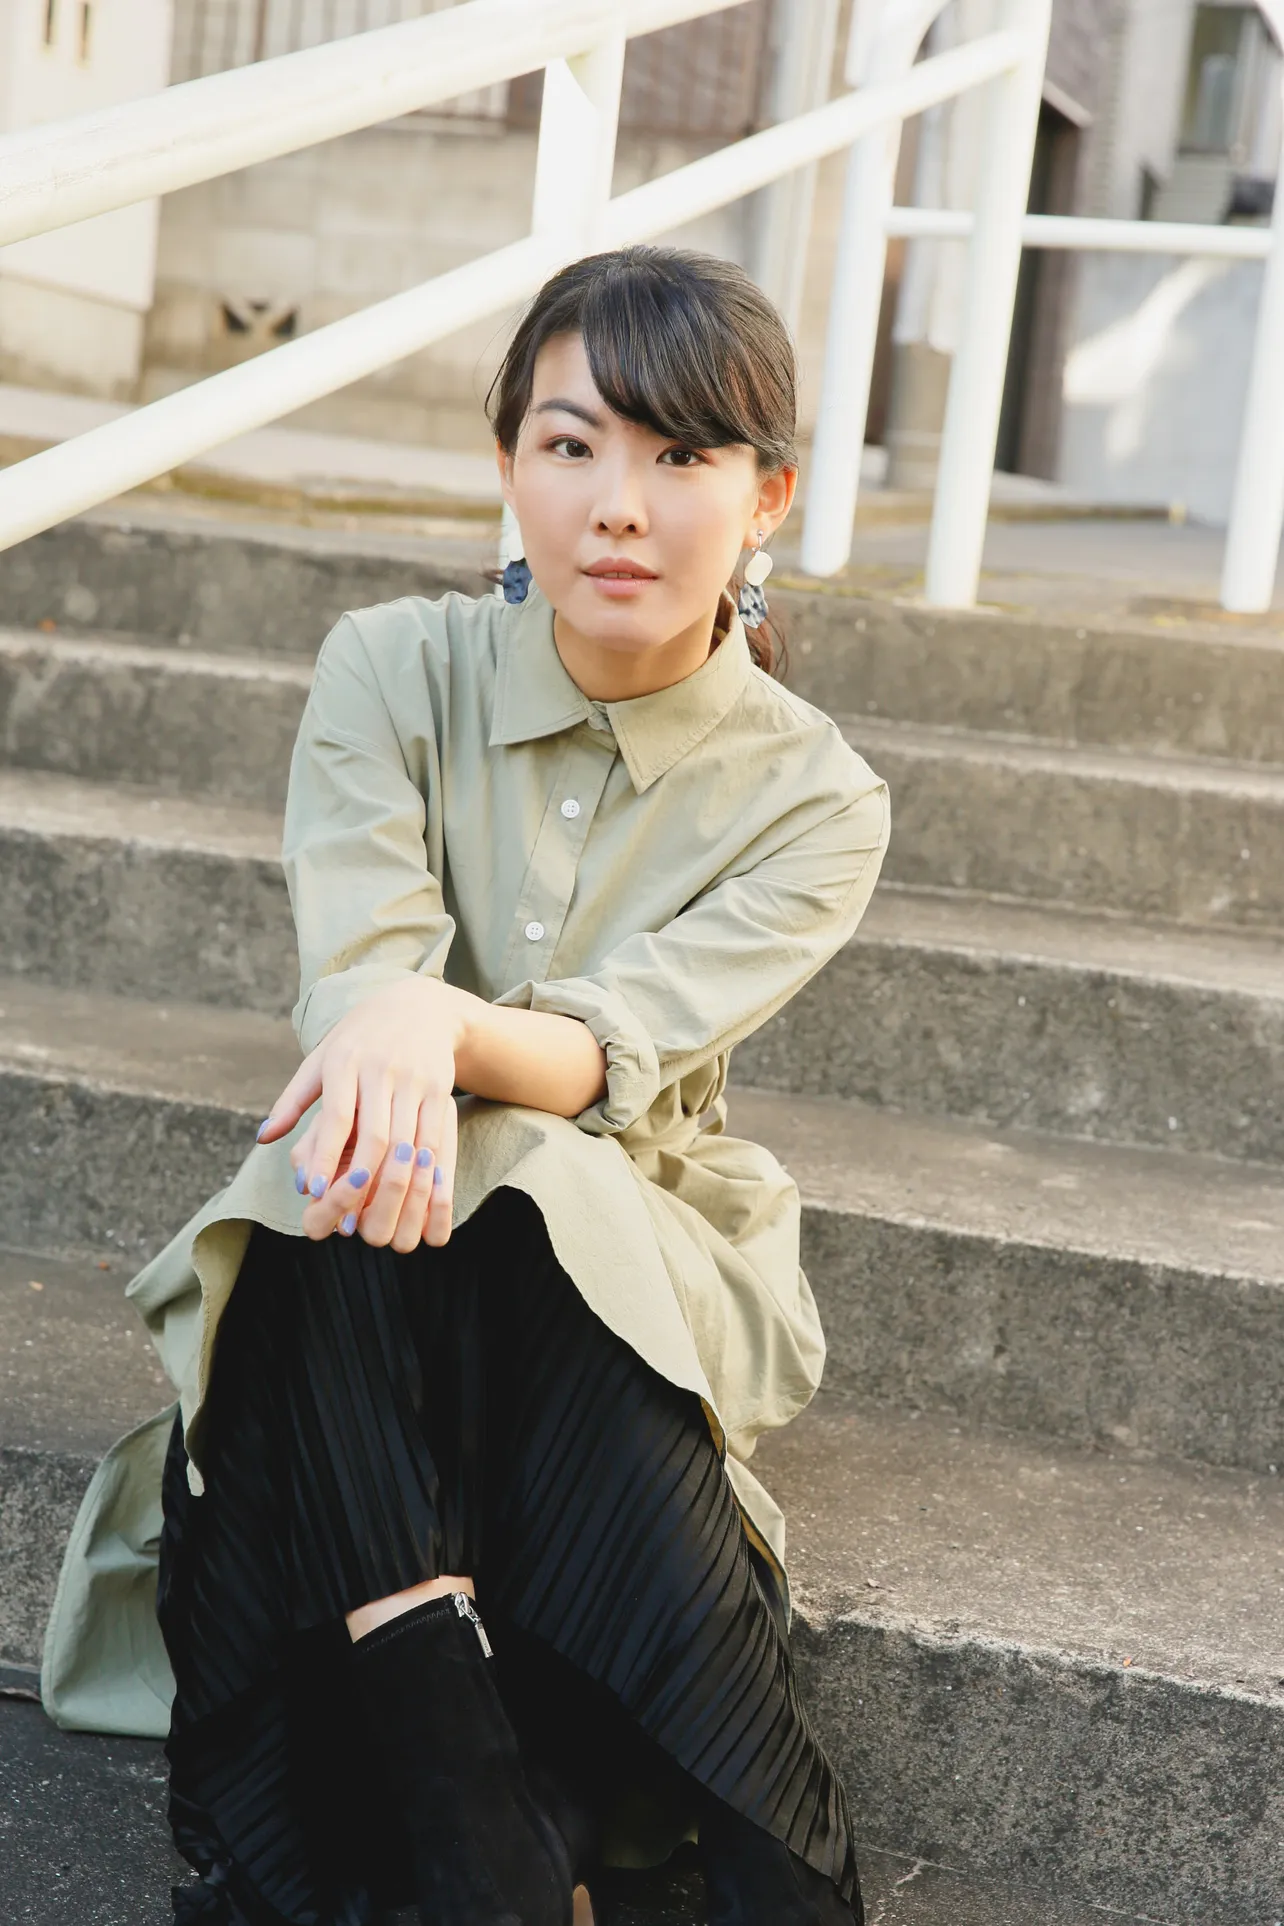 「スカーレット」でヒロインの妹・百合子を演じている福田麻由子